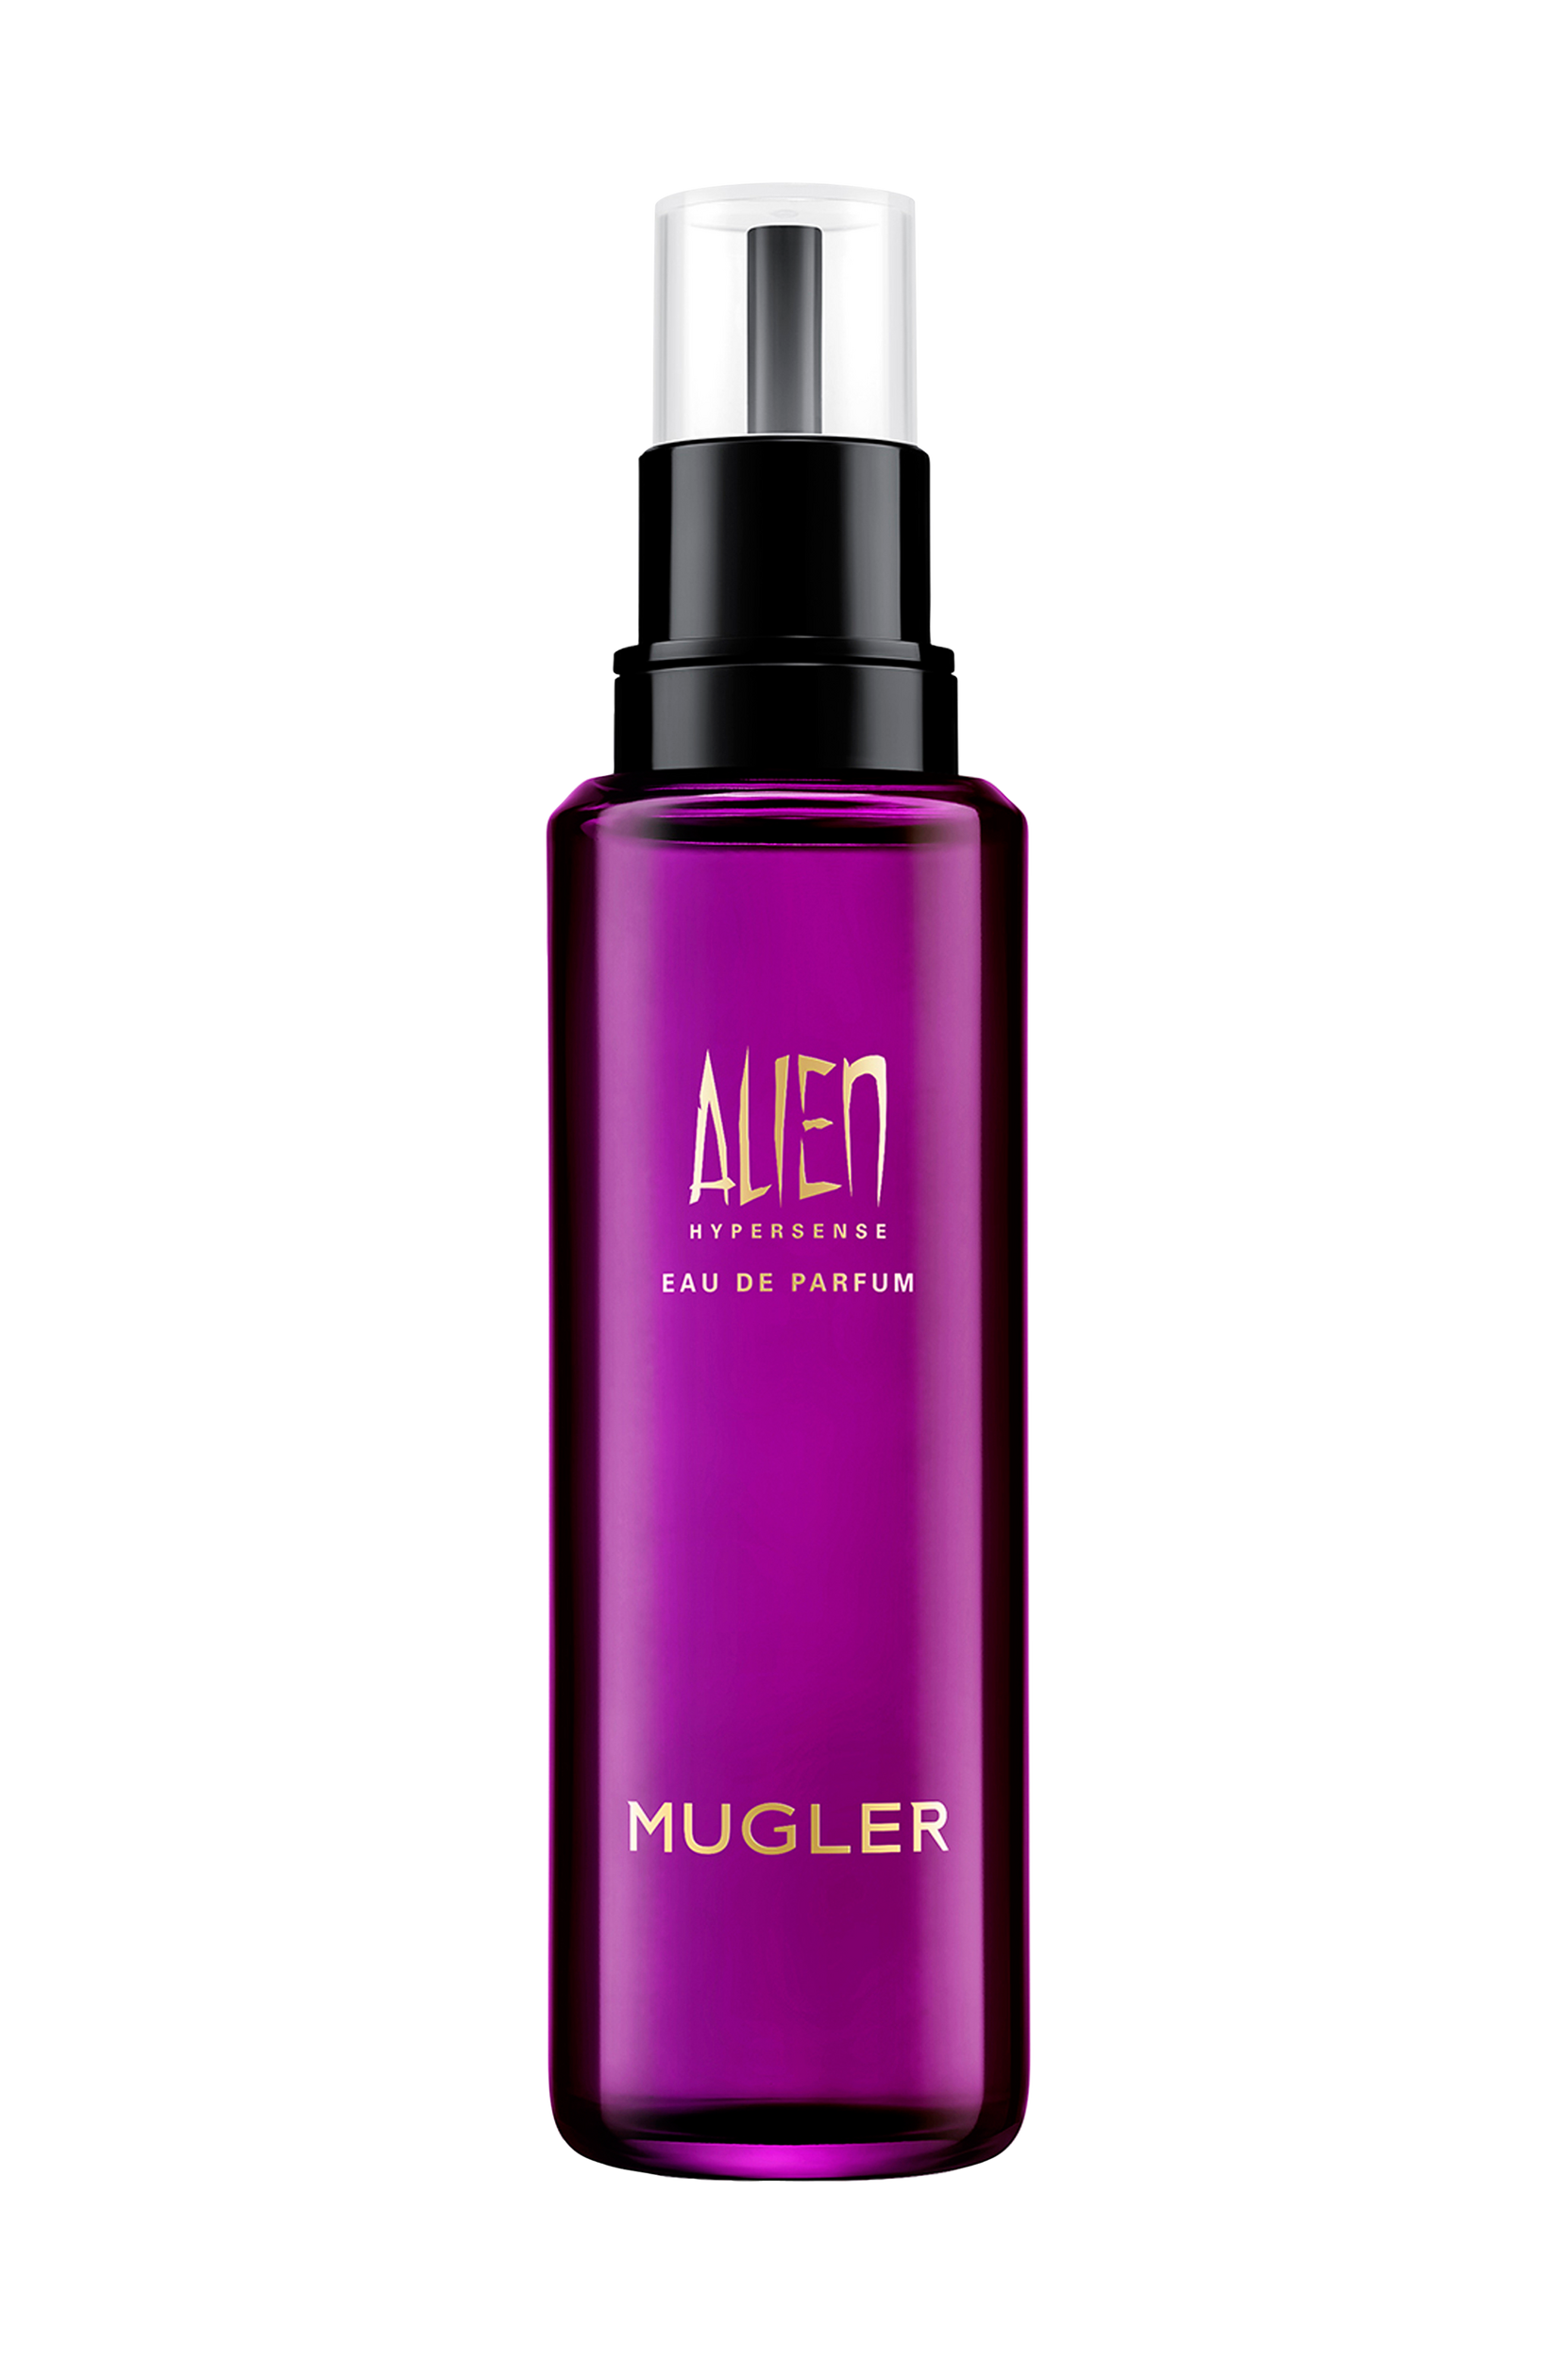 Mugler - Alien Hyper Edp Refill 100 ml - Transparent